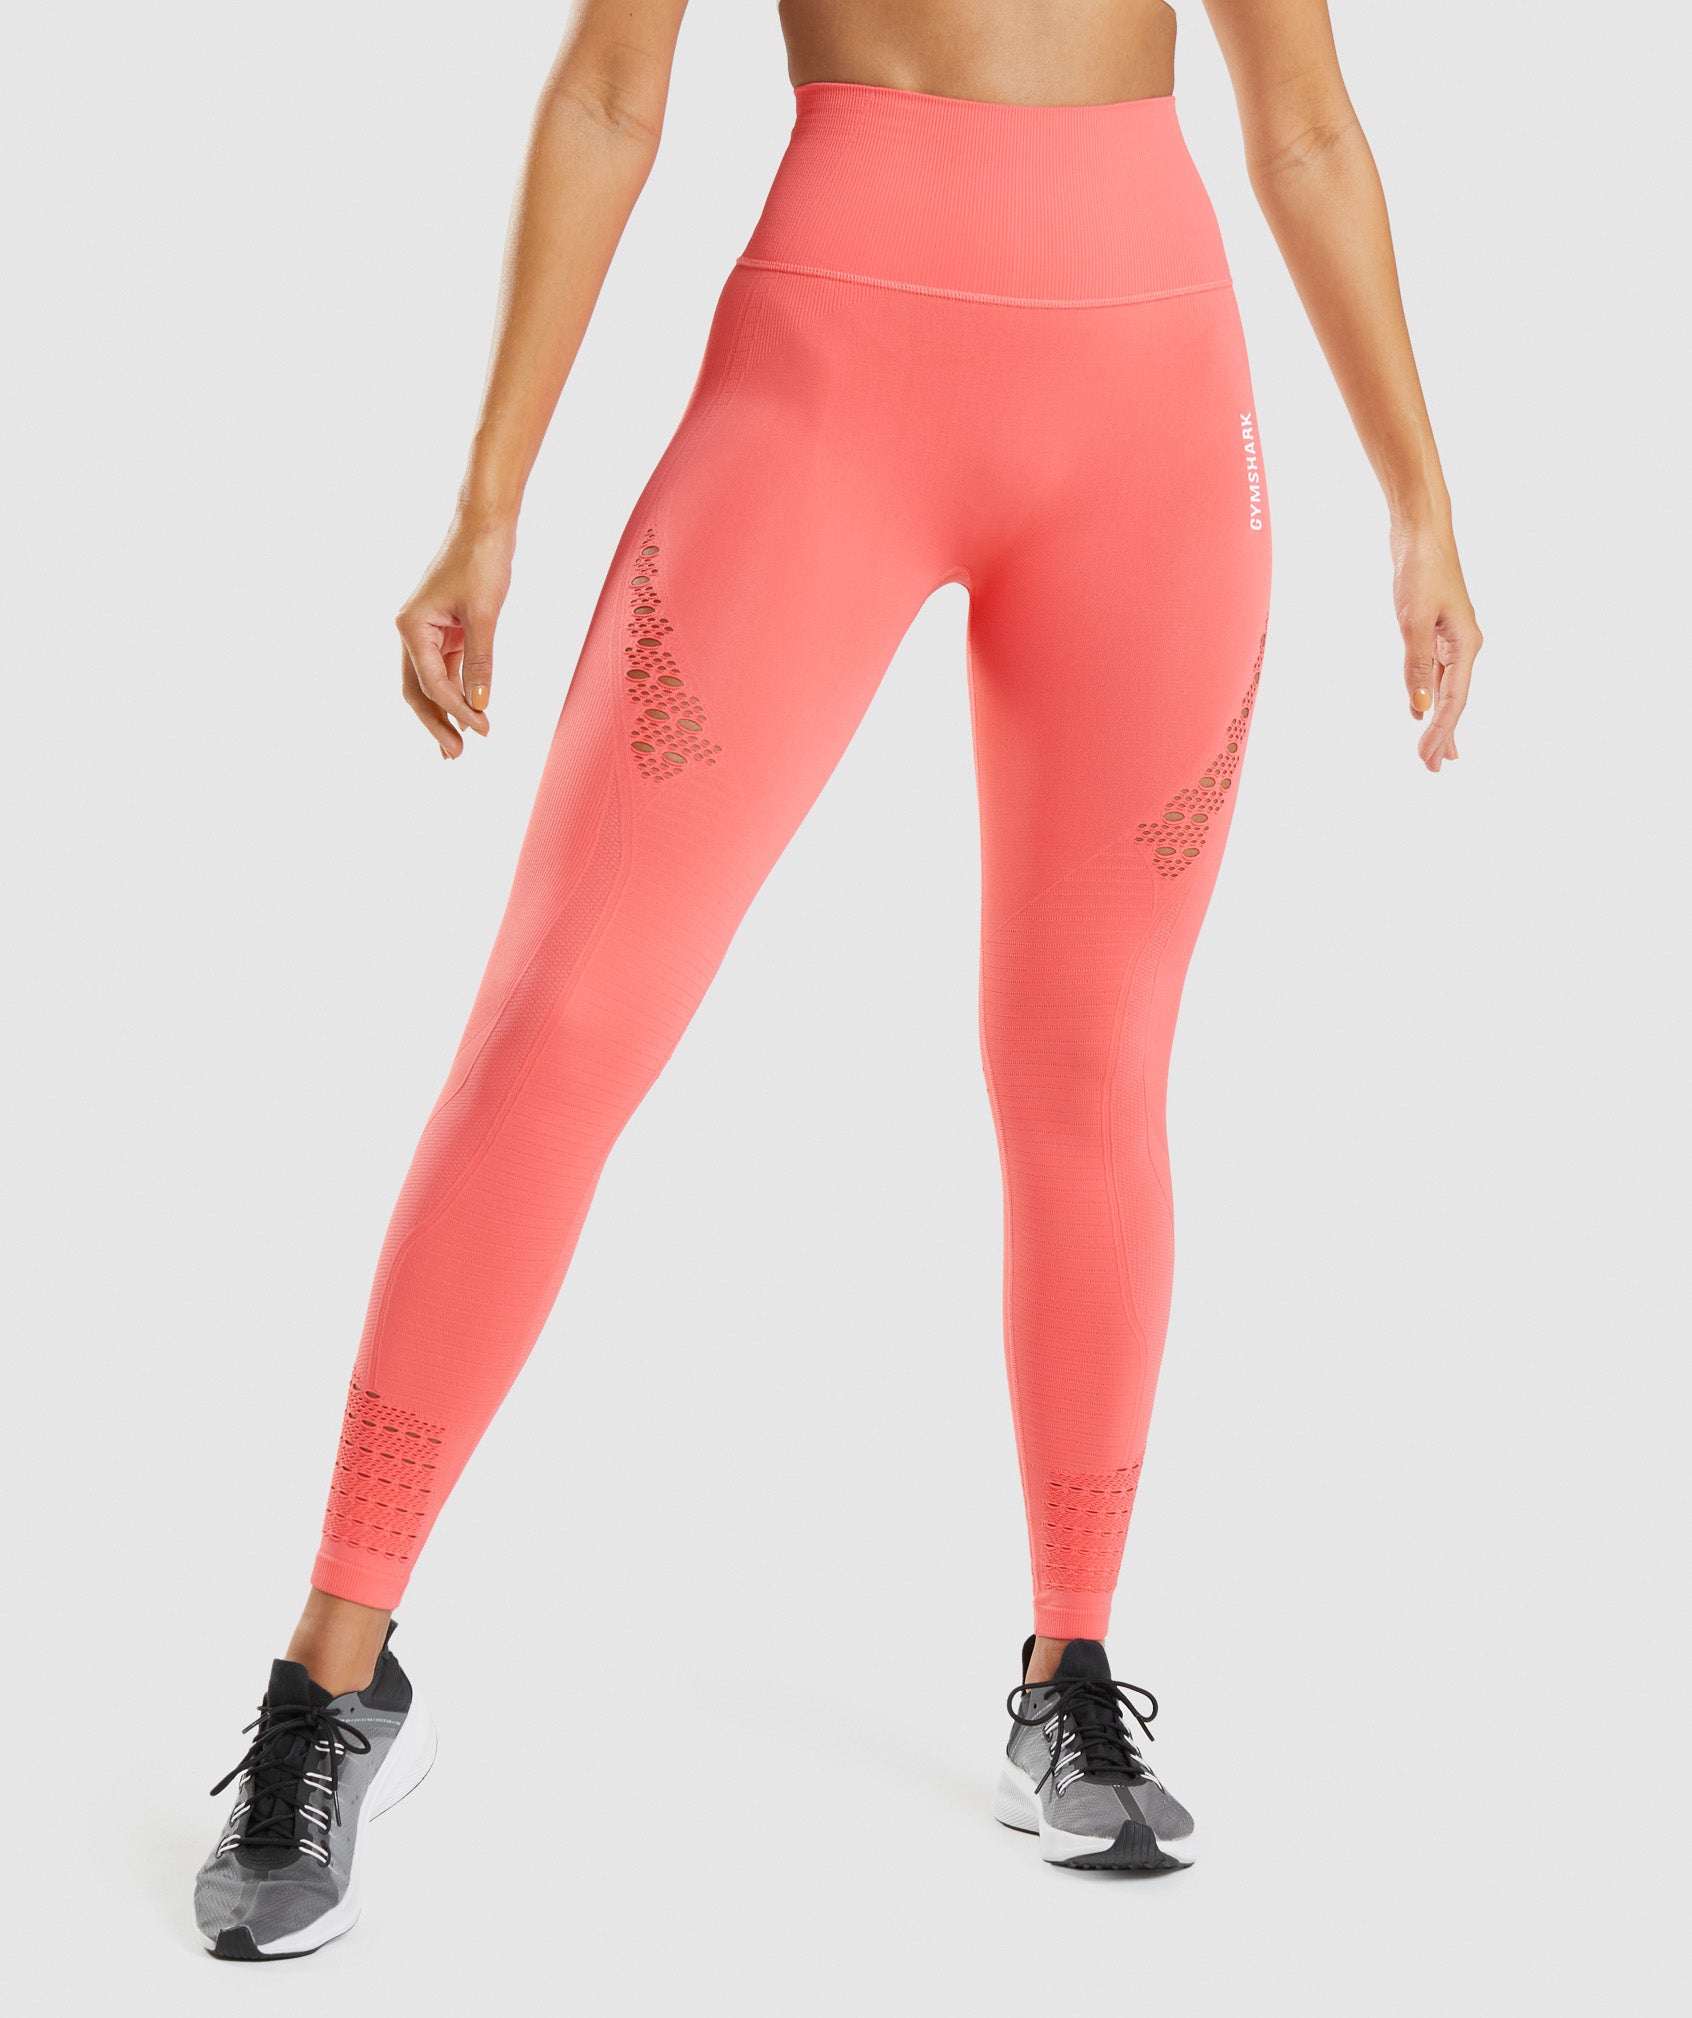 Gymshark Flex Highwaisted Leggings Pink - $18 (64% Off Retail) - From Margot